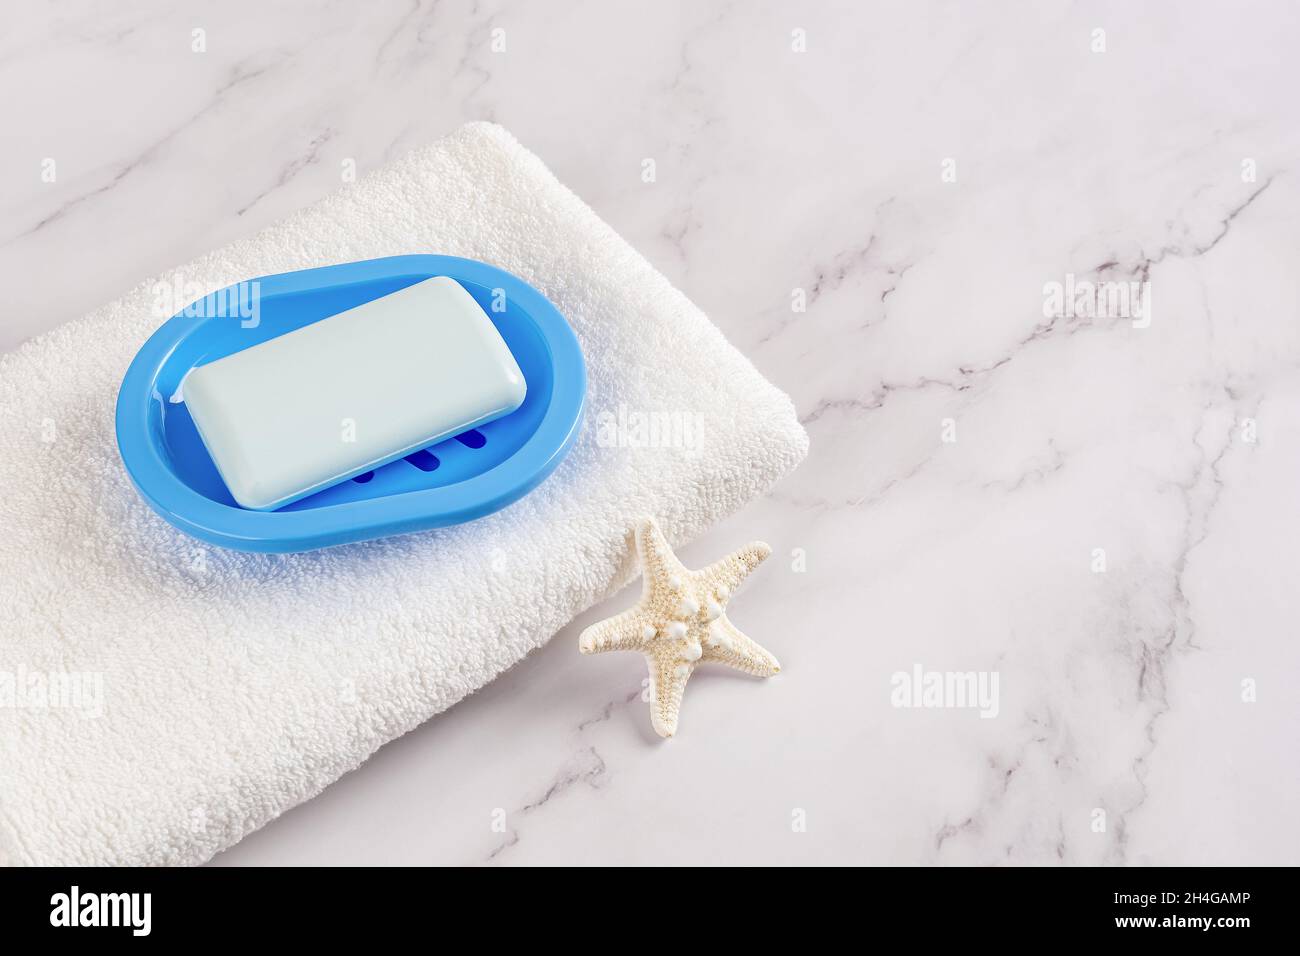 Saponetta rettangolare su un piatto blu su un asciugamano bianco di cotone e stelle marine sulla superficie di marmo. Lavarsi le mani con concetti di sapone, igiene, purezza. Foto Stock